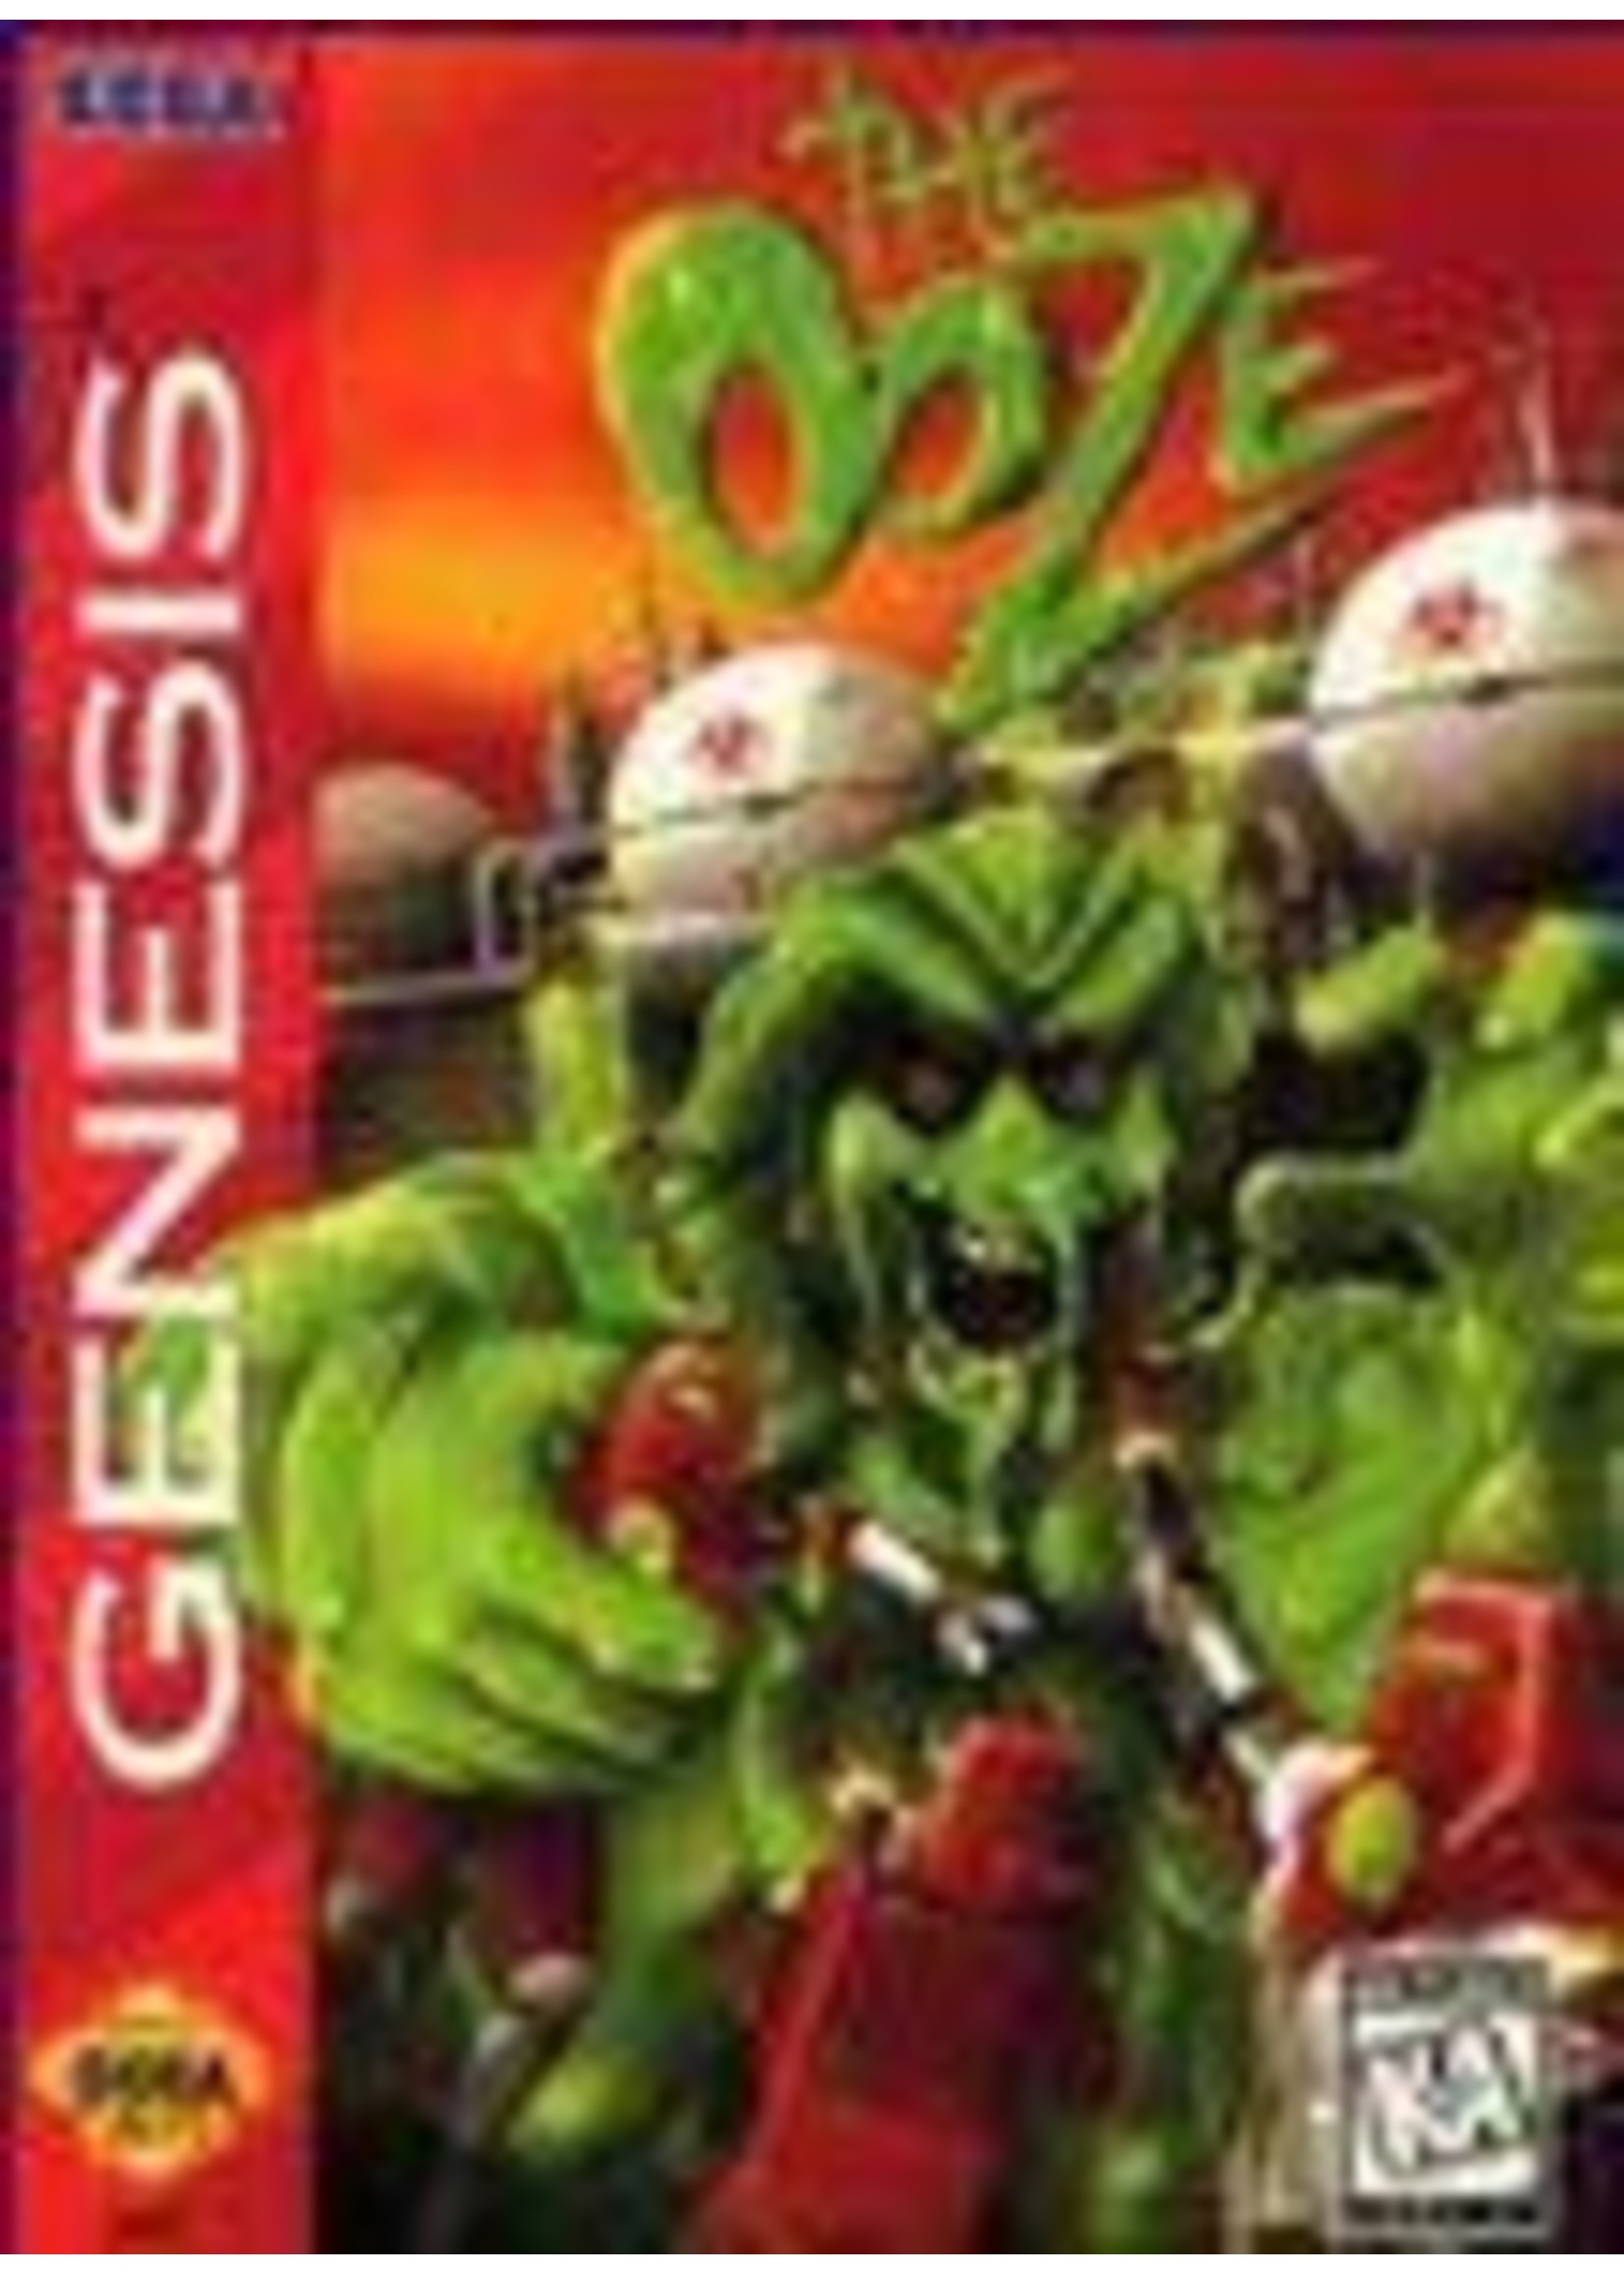 The Ooze Sega Genesis